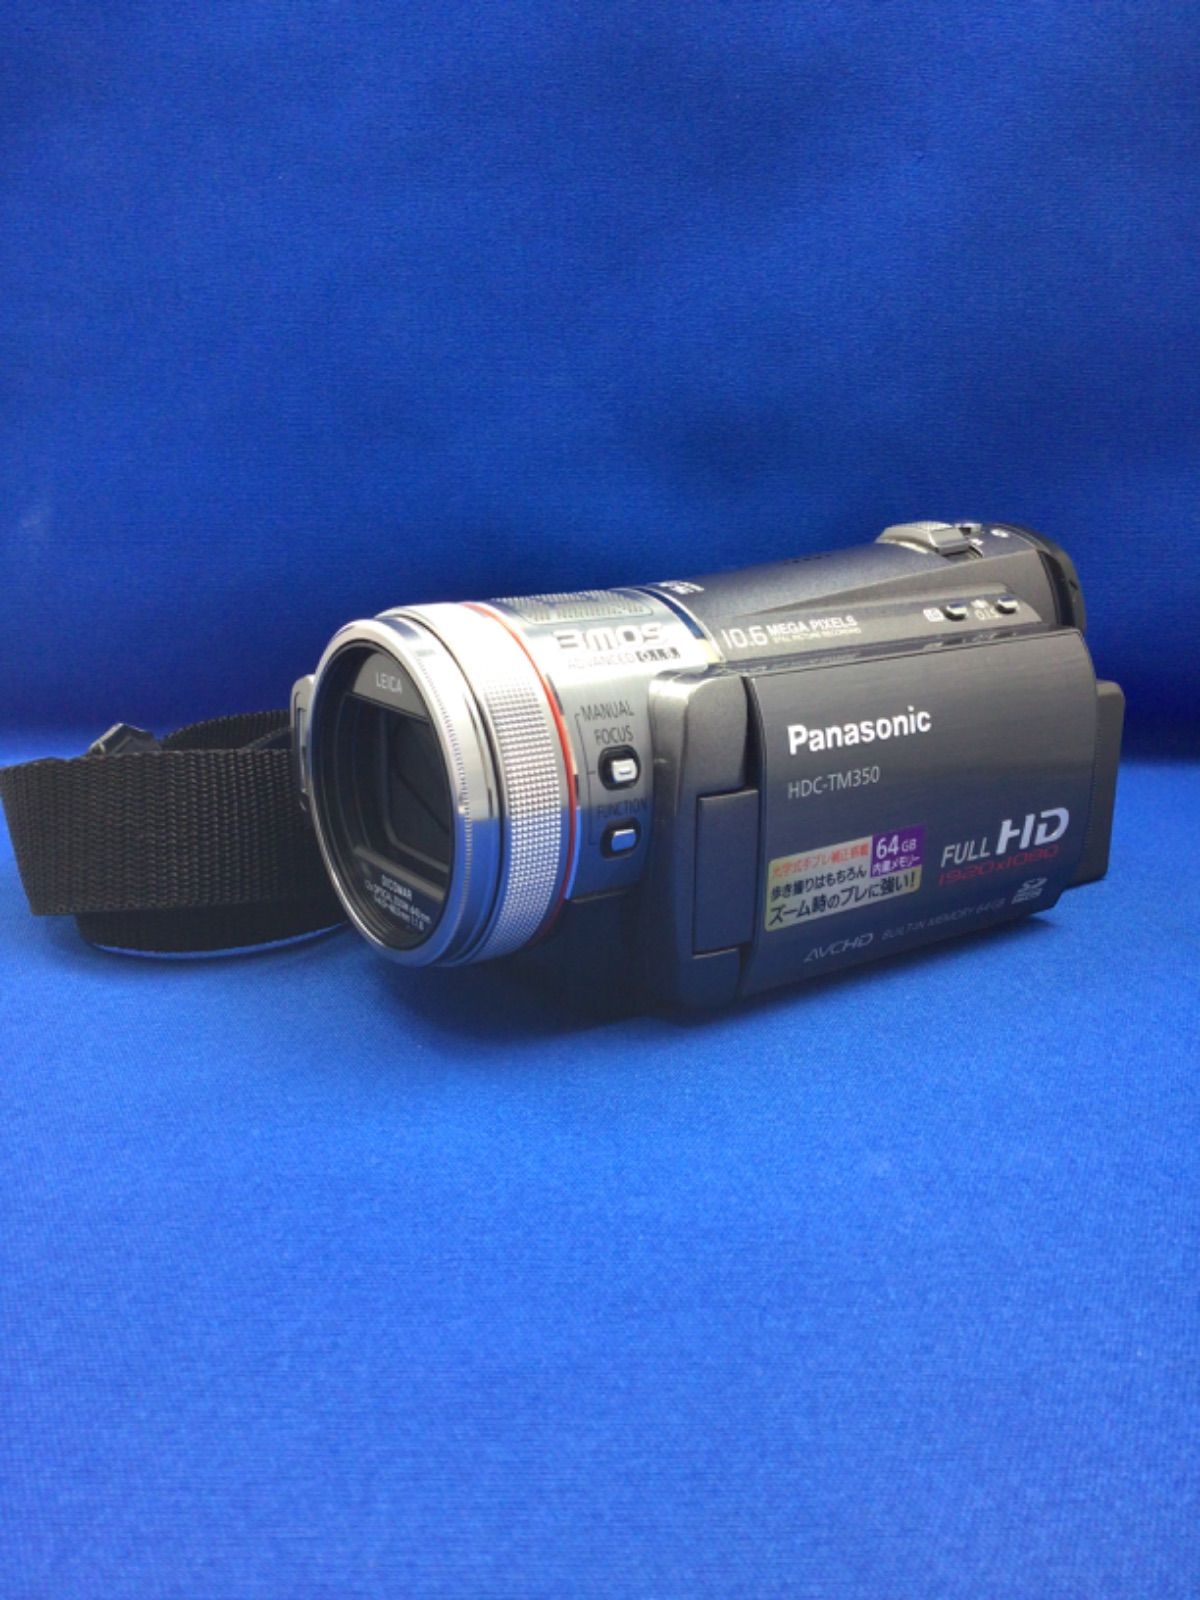 美品 Panasonic ビデオカメラ HDC TM350 FULLHD 392 - コレクション